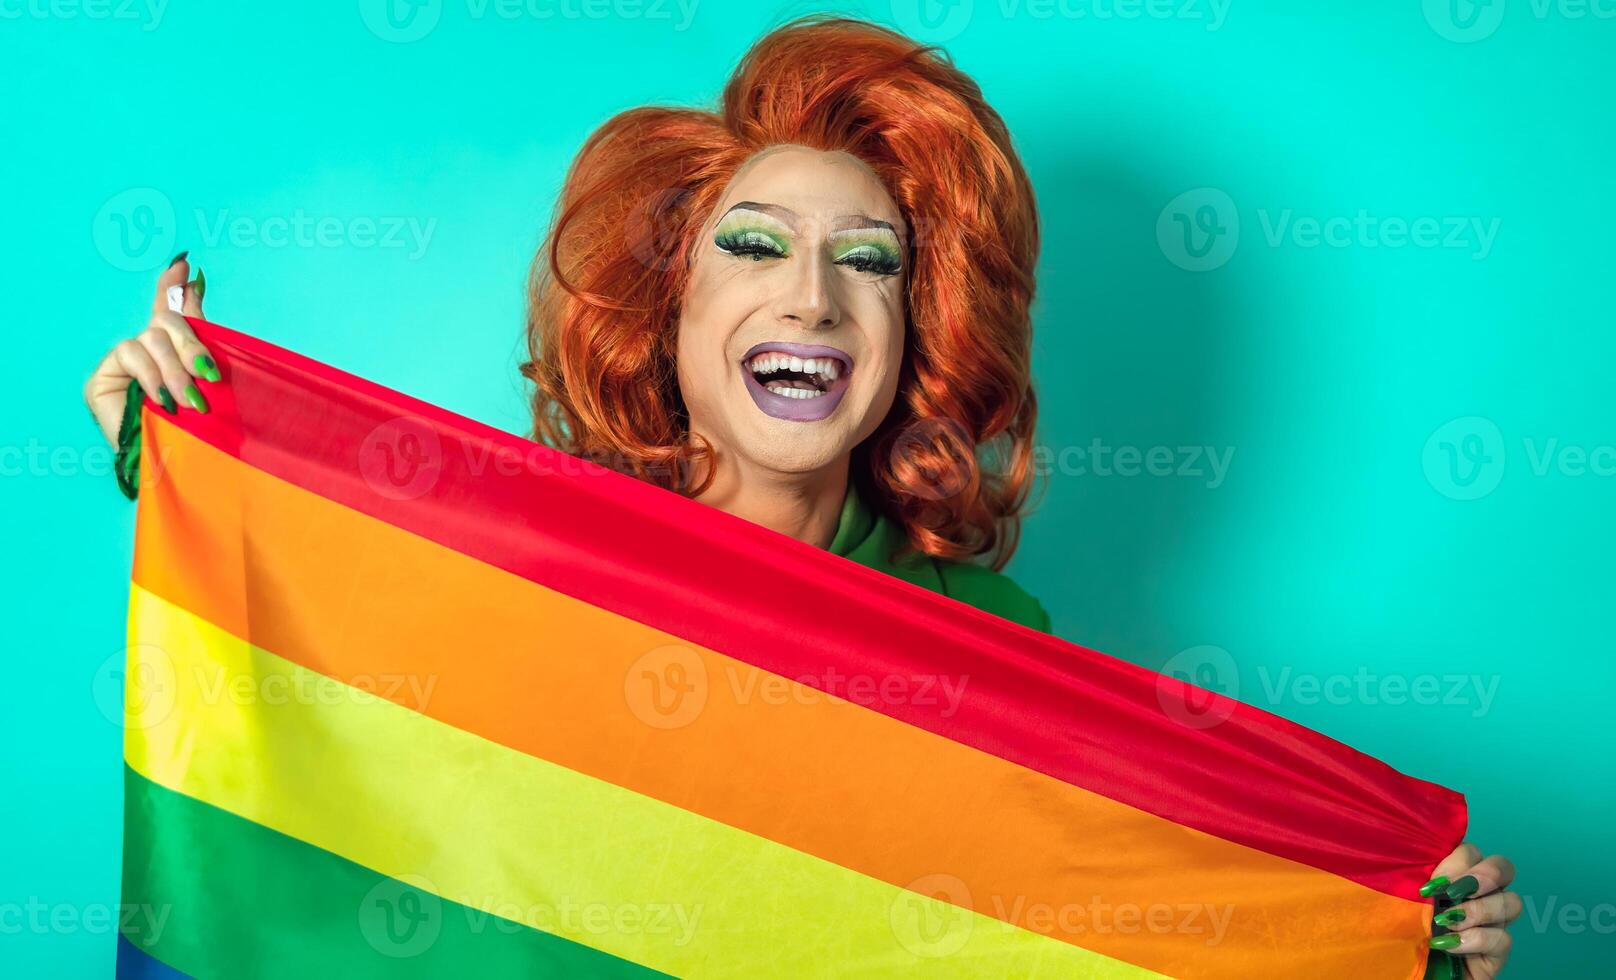 contento arrastrar reina celebrando gay orgullo participación arco iris bandera símbolo de lgbtq comunidad foto